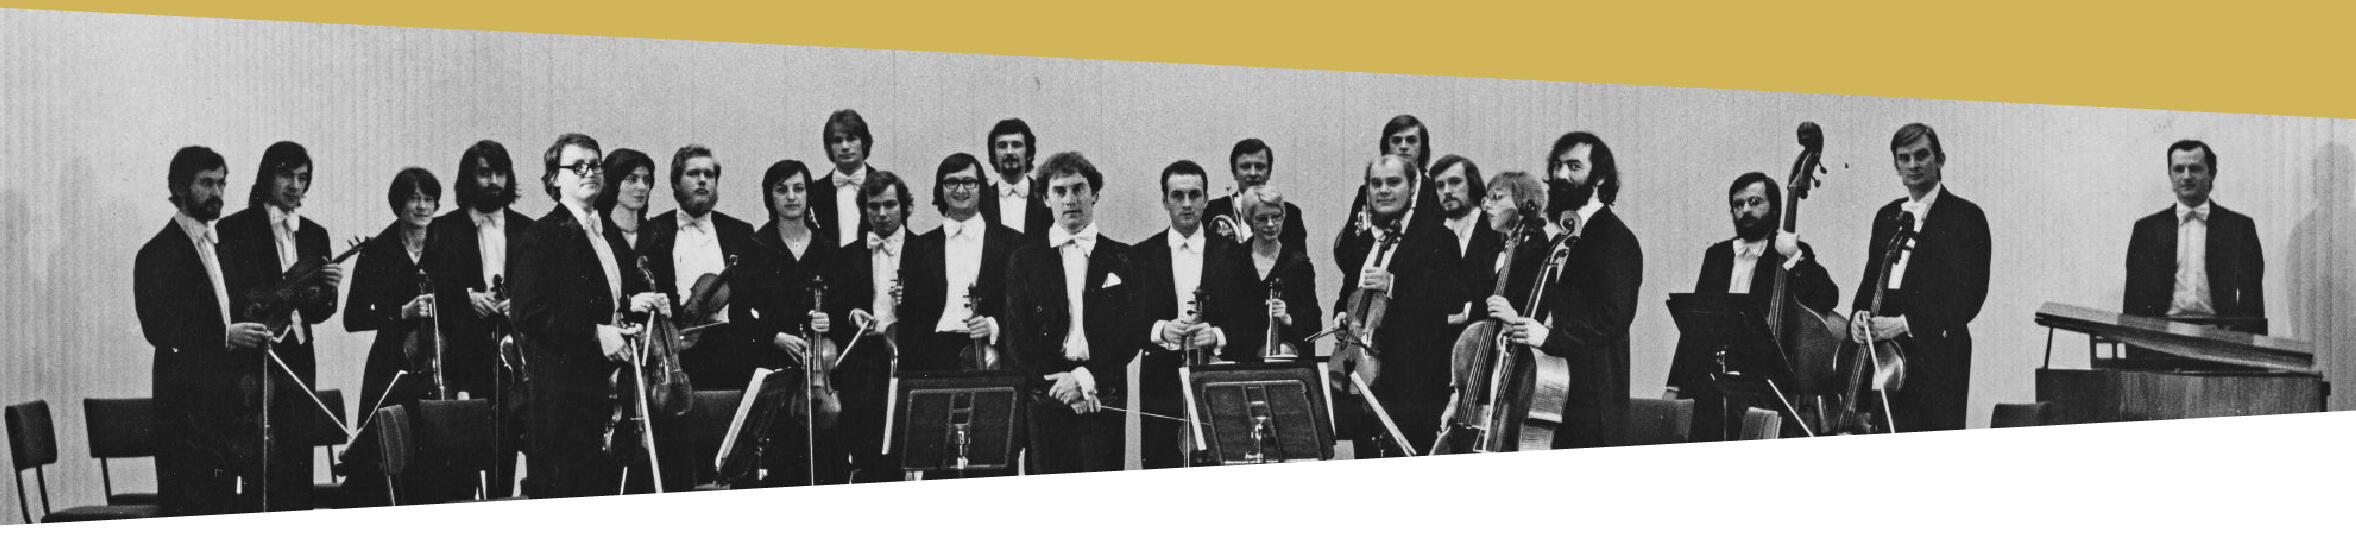 Czarno-biała zdjęcie grupowe: w sali koncertowej, na scenie, stoi grupa dwudziestu czterech osób – pięć kobiety i dziewiętnastu mężczyzn. Są to muzycy Polskiej Orkiestry Kameralnej. Wszyscy trzymają w dłoniach swoje instrumenty muzyczne. Na środku stoi Jerzy Maksymiuk – dyrygent orkiestry.